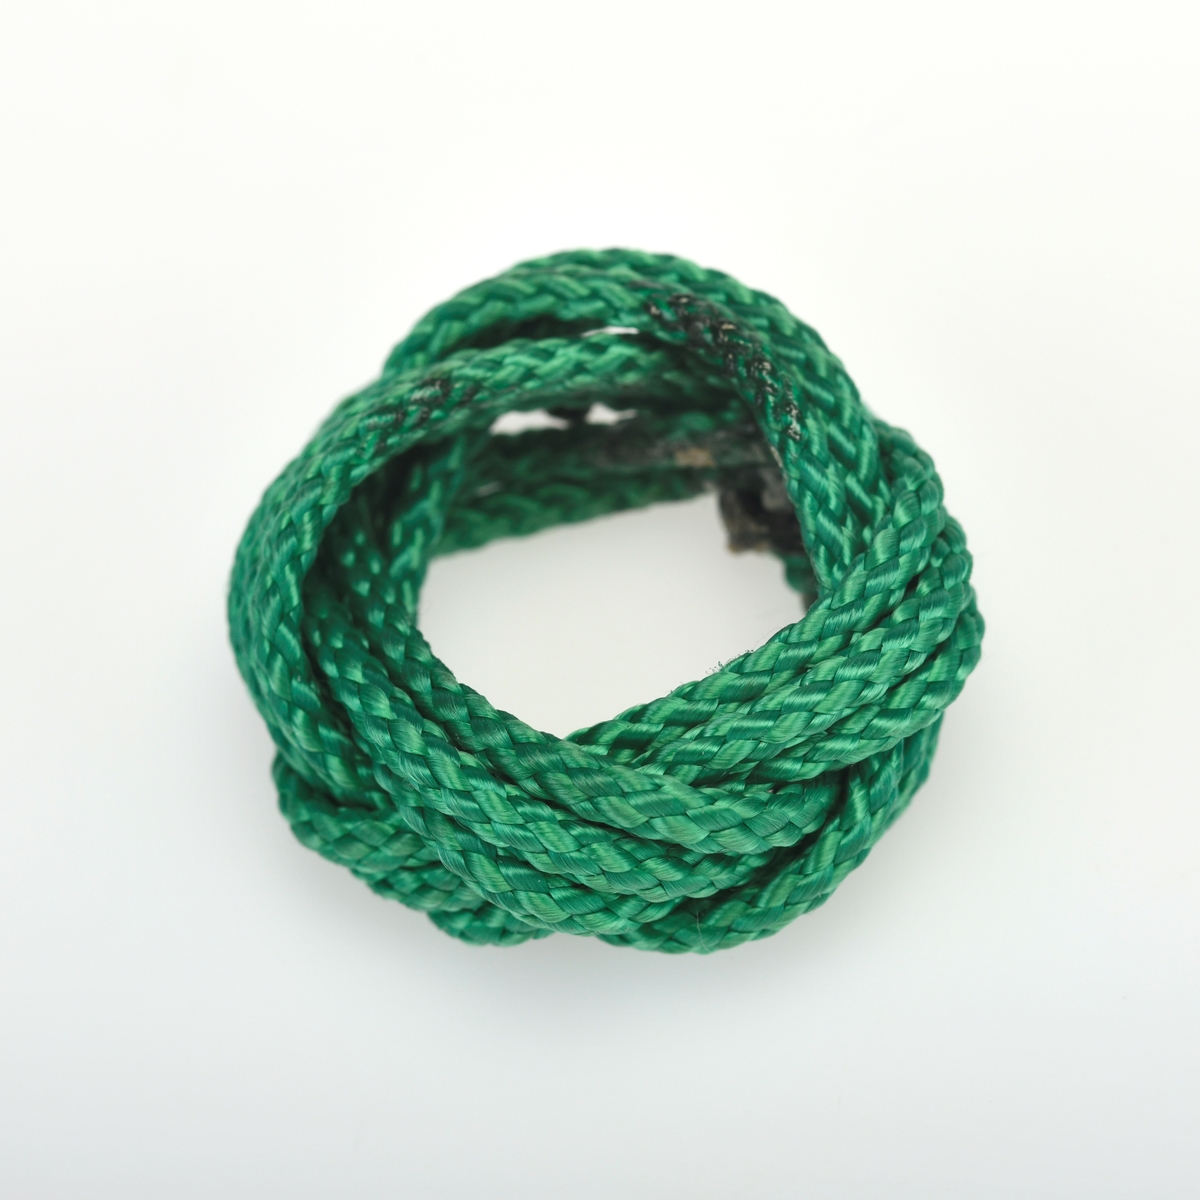 En skjerfknute/speiderknute flettet av grønn bomullssnor. Denne typen knute ble brukt av guttespeidere i alderen 11-16 år (speidere i tropp) frem til 1978. Denne er trolig hjemmelaget.